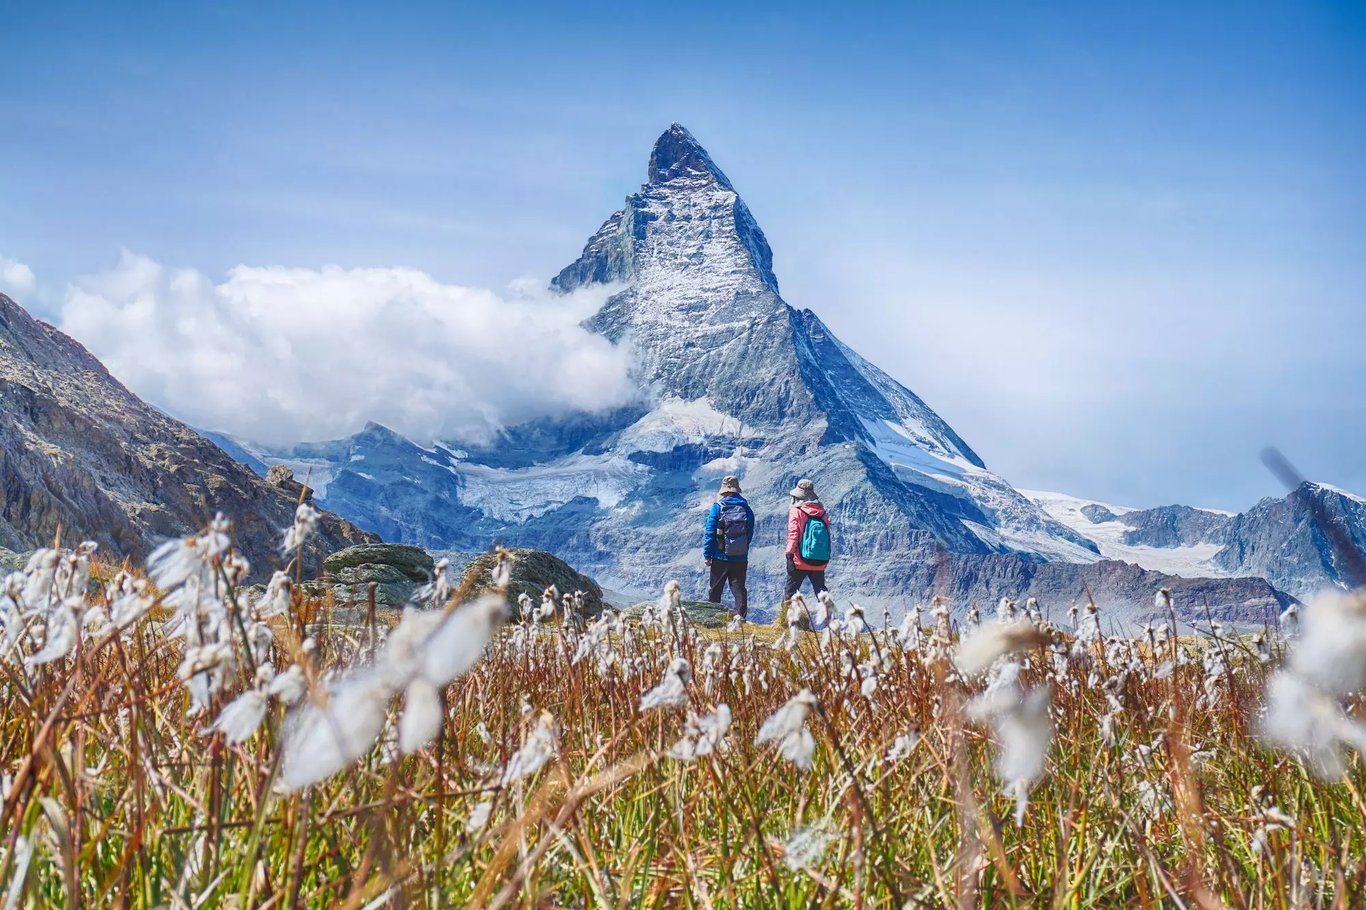 Zermatt látnivalók - Matterhorn, túraútvonalak, kalandpark, tanösvények, jégpalota, stb.